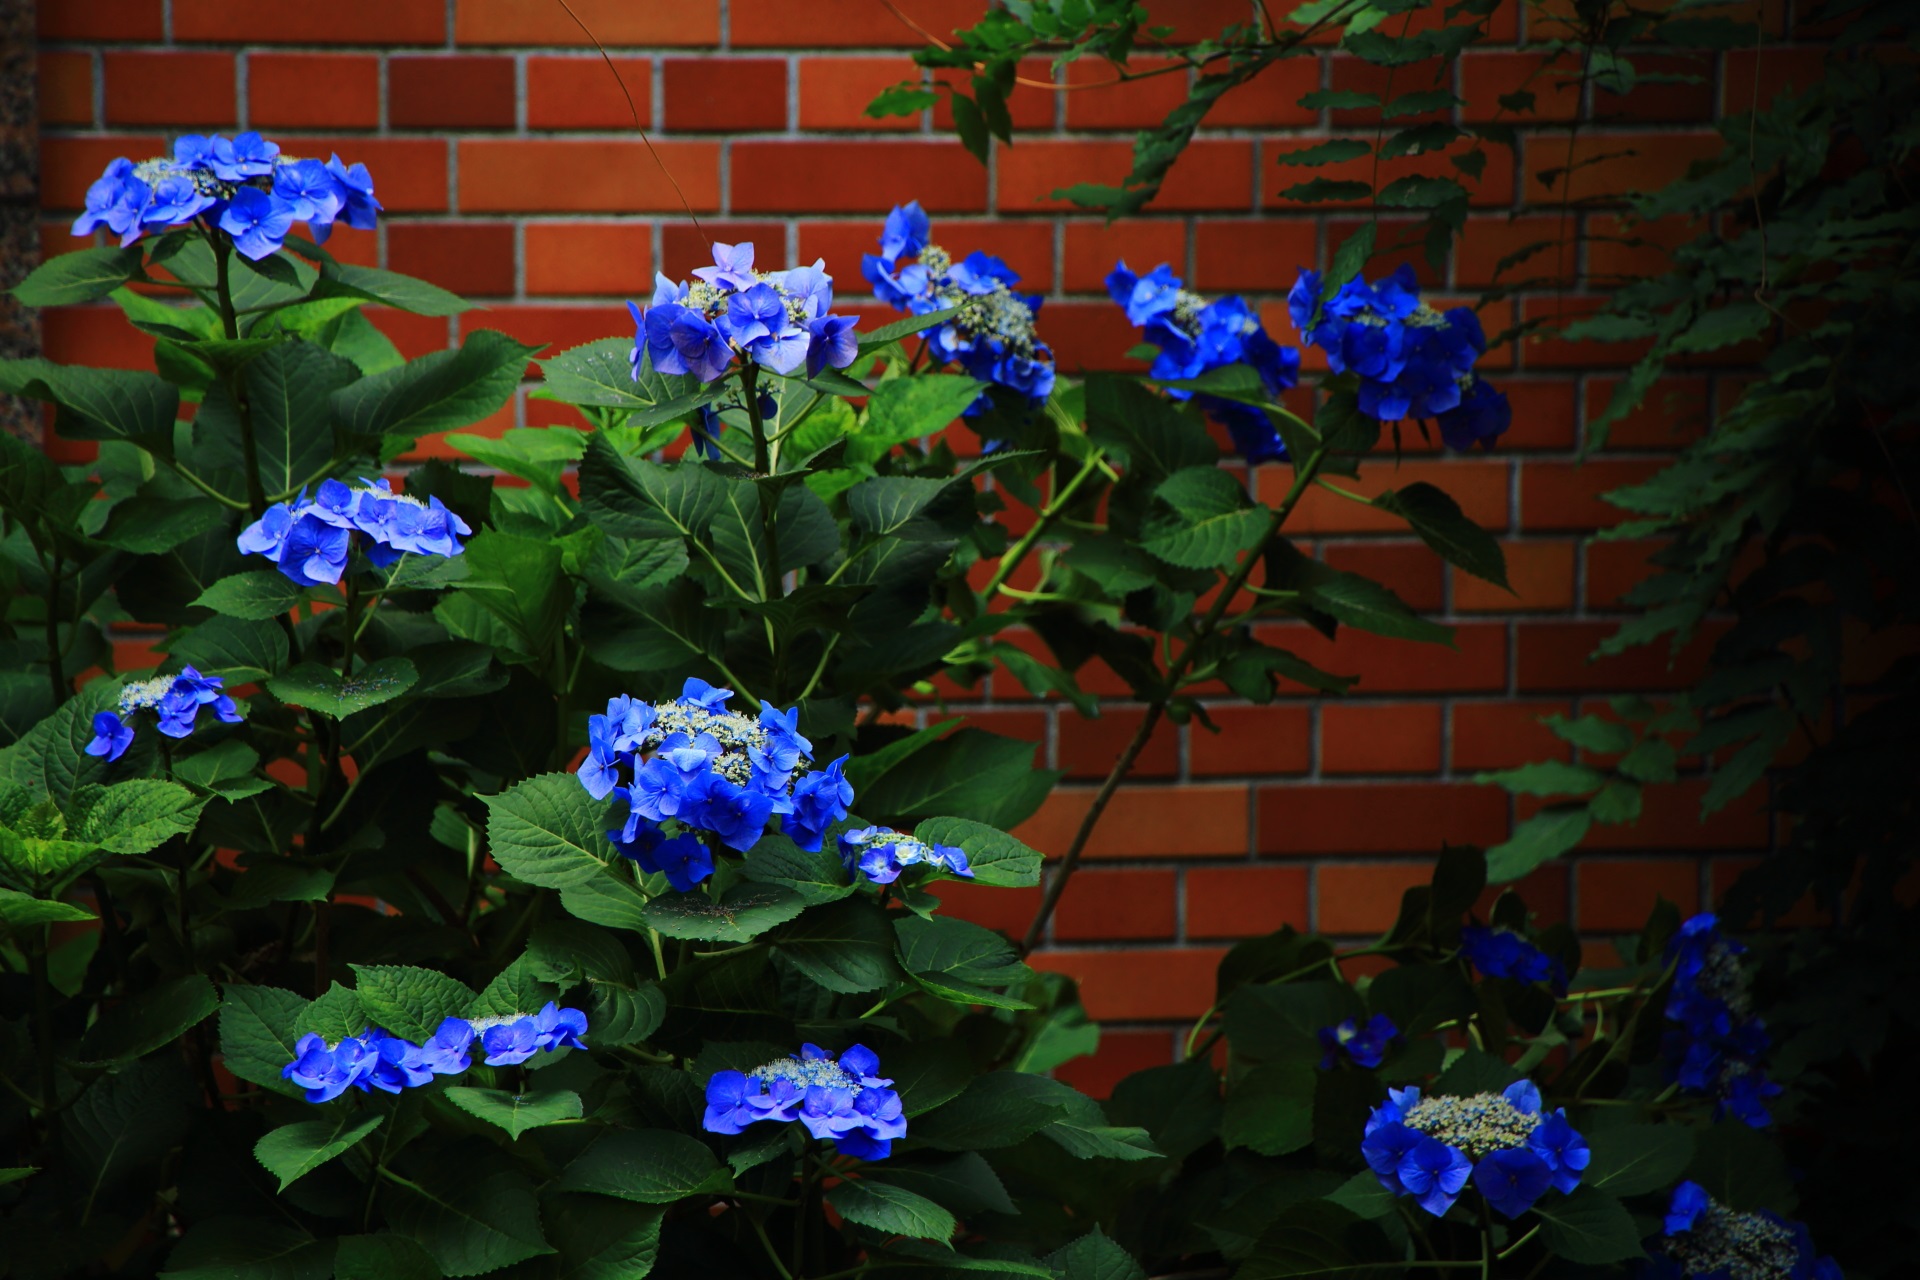 後ろに煉瓦に妙に合う青い鮮やかな額紫陽花